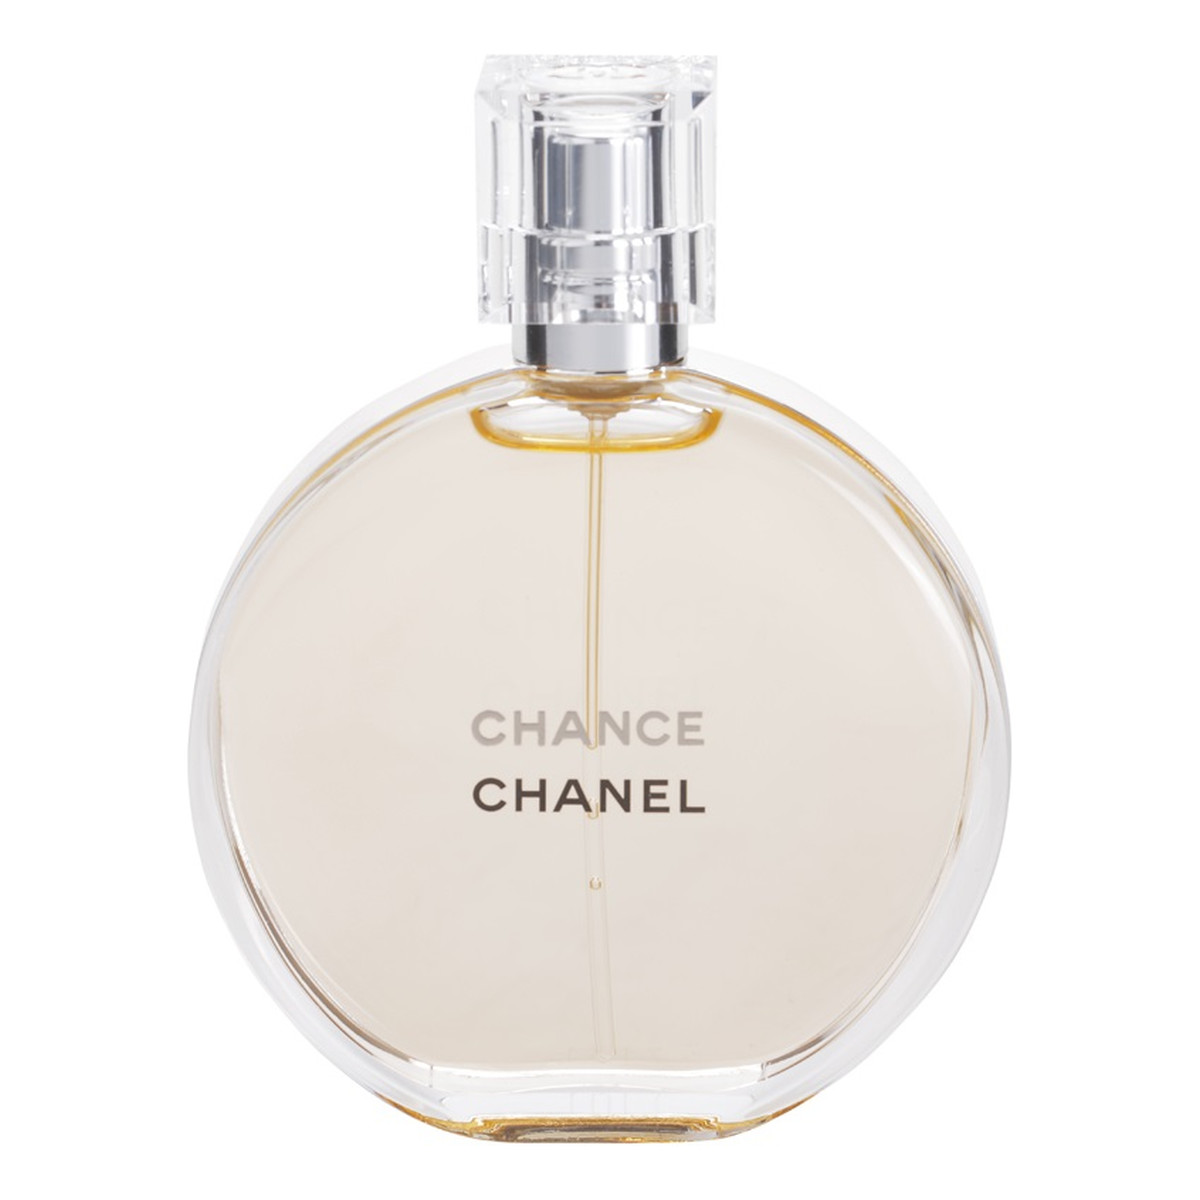 Chanel Chance woda toaletowa spray dla kobiet 50ml